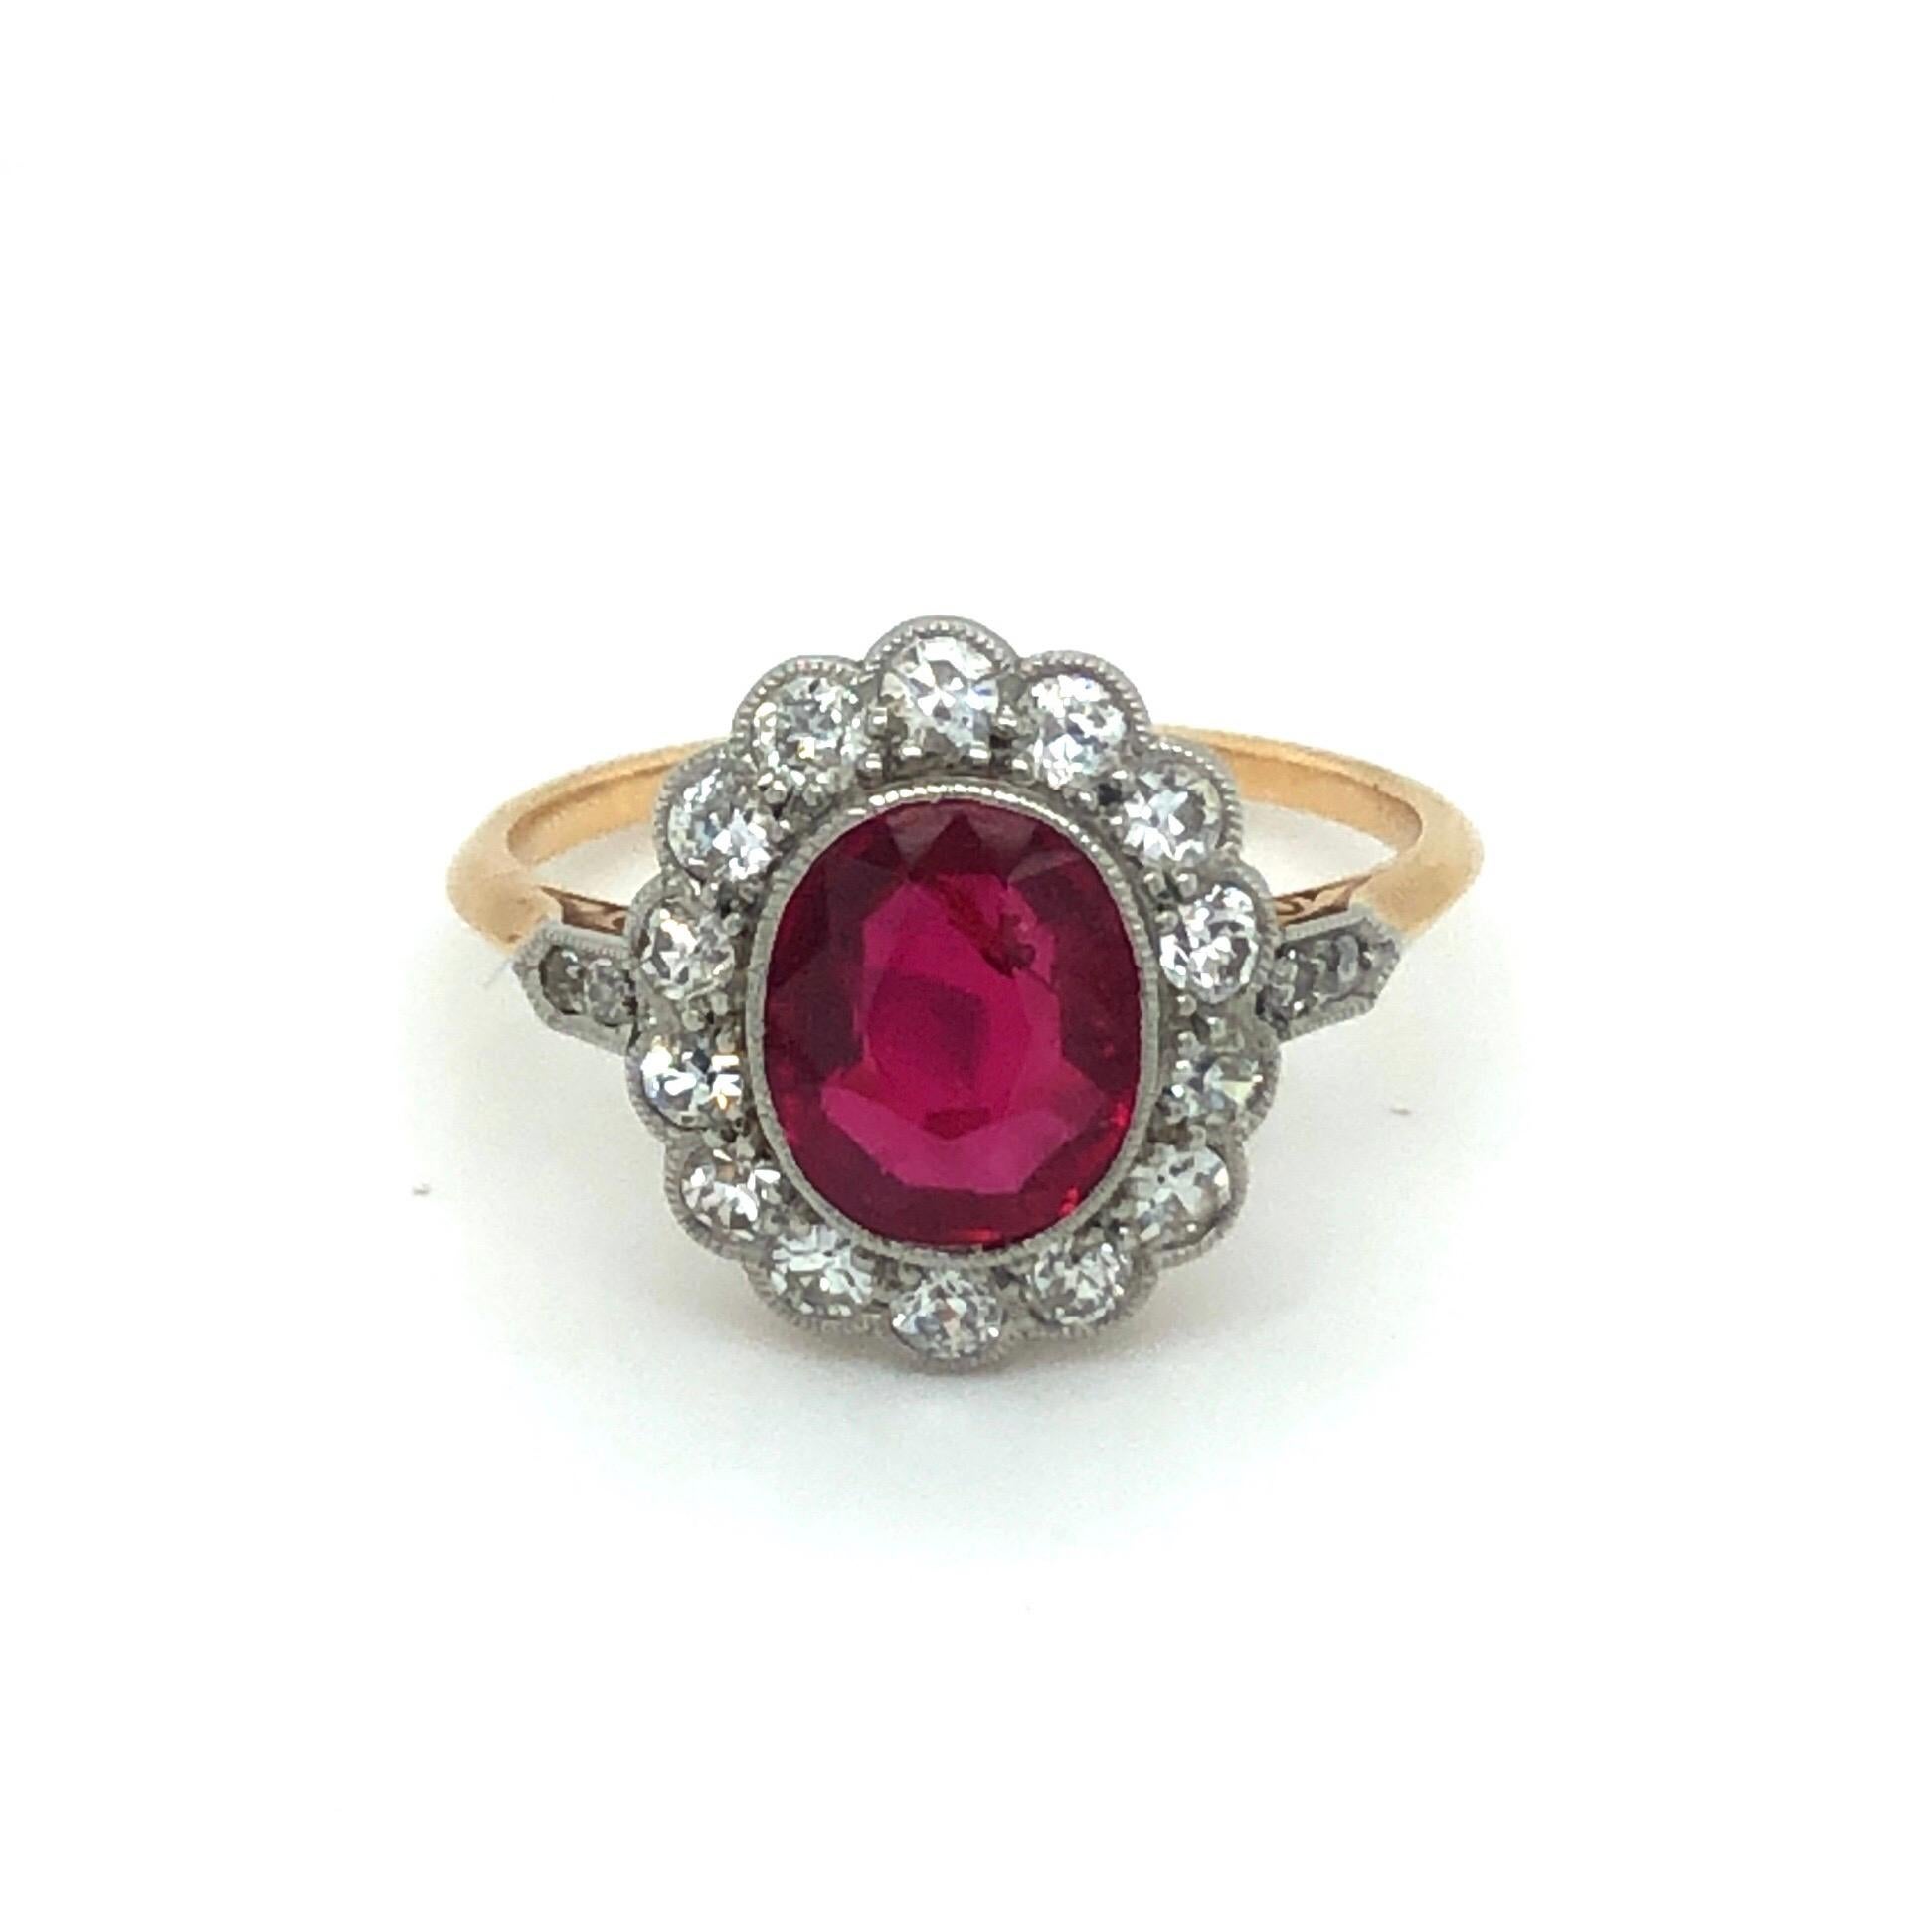 Ring aus Rotgold und Platin mit Rubinen und Diamanten aus Birma, um 1910.
Bezaubernder Ring aus der Belle Epoque, gefertigt aus 14 Karat Roségold und Platin, besetzt mit einem ovalen, unerhitzten burmesischen Rubin von ca. 1,2 Karat, umgeben von 18